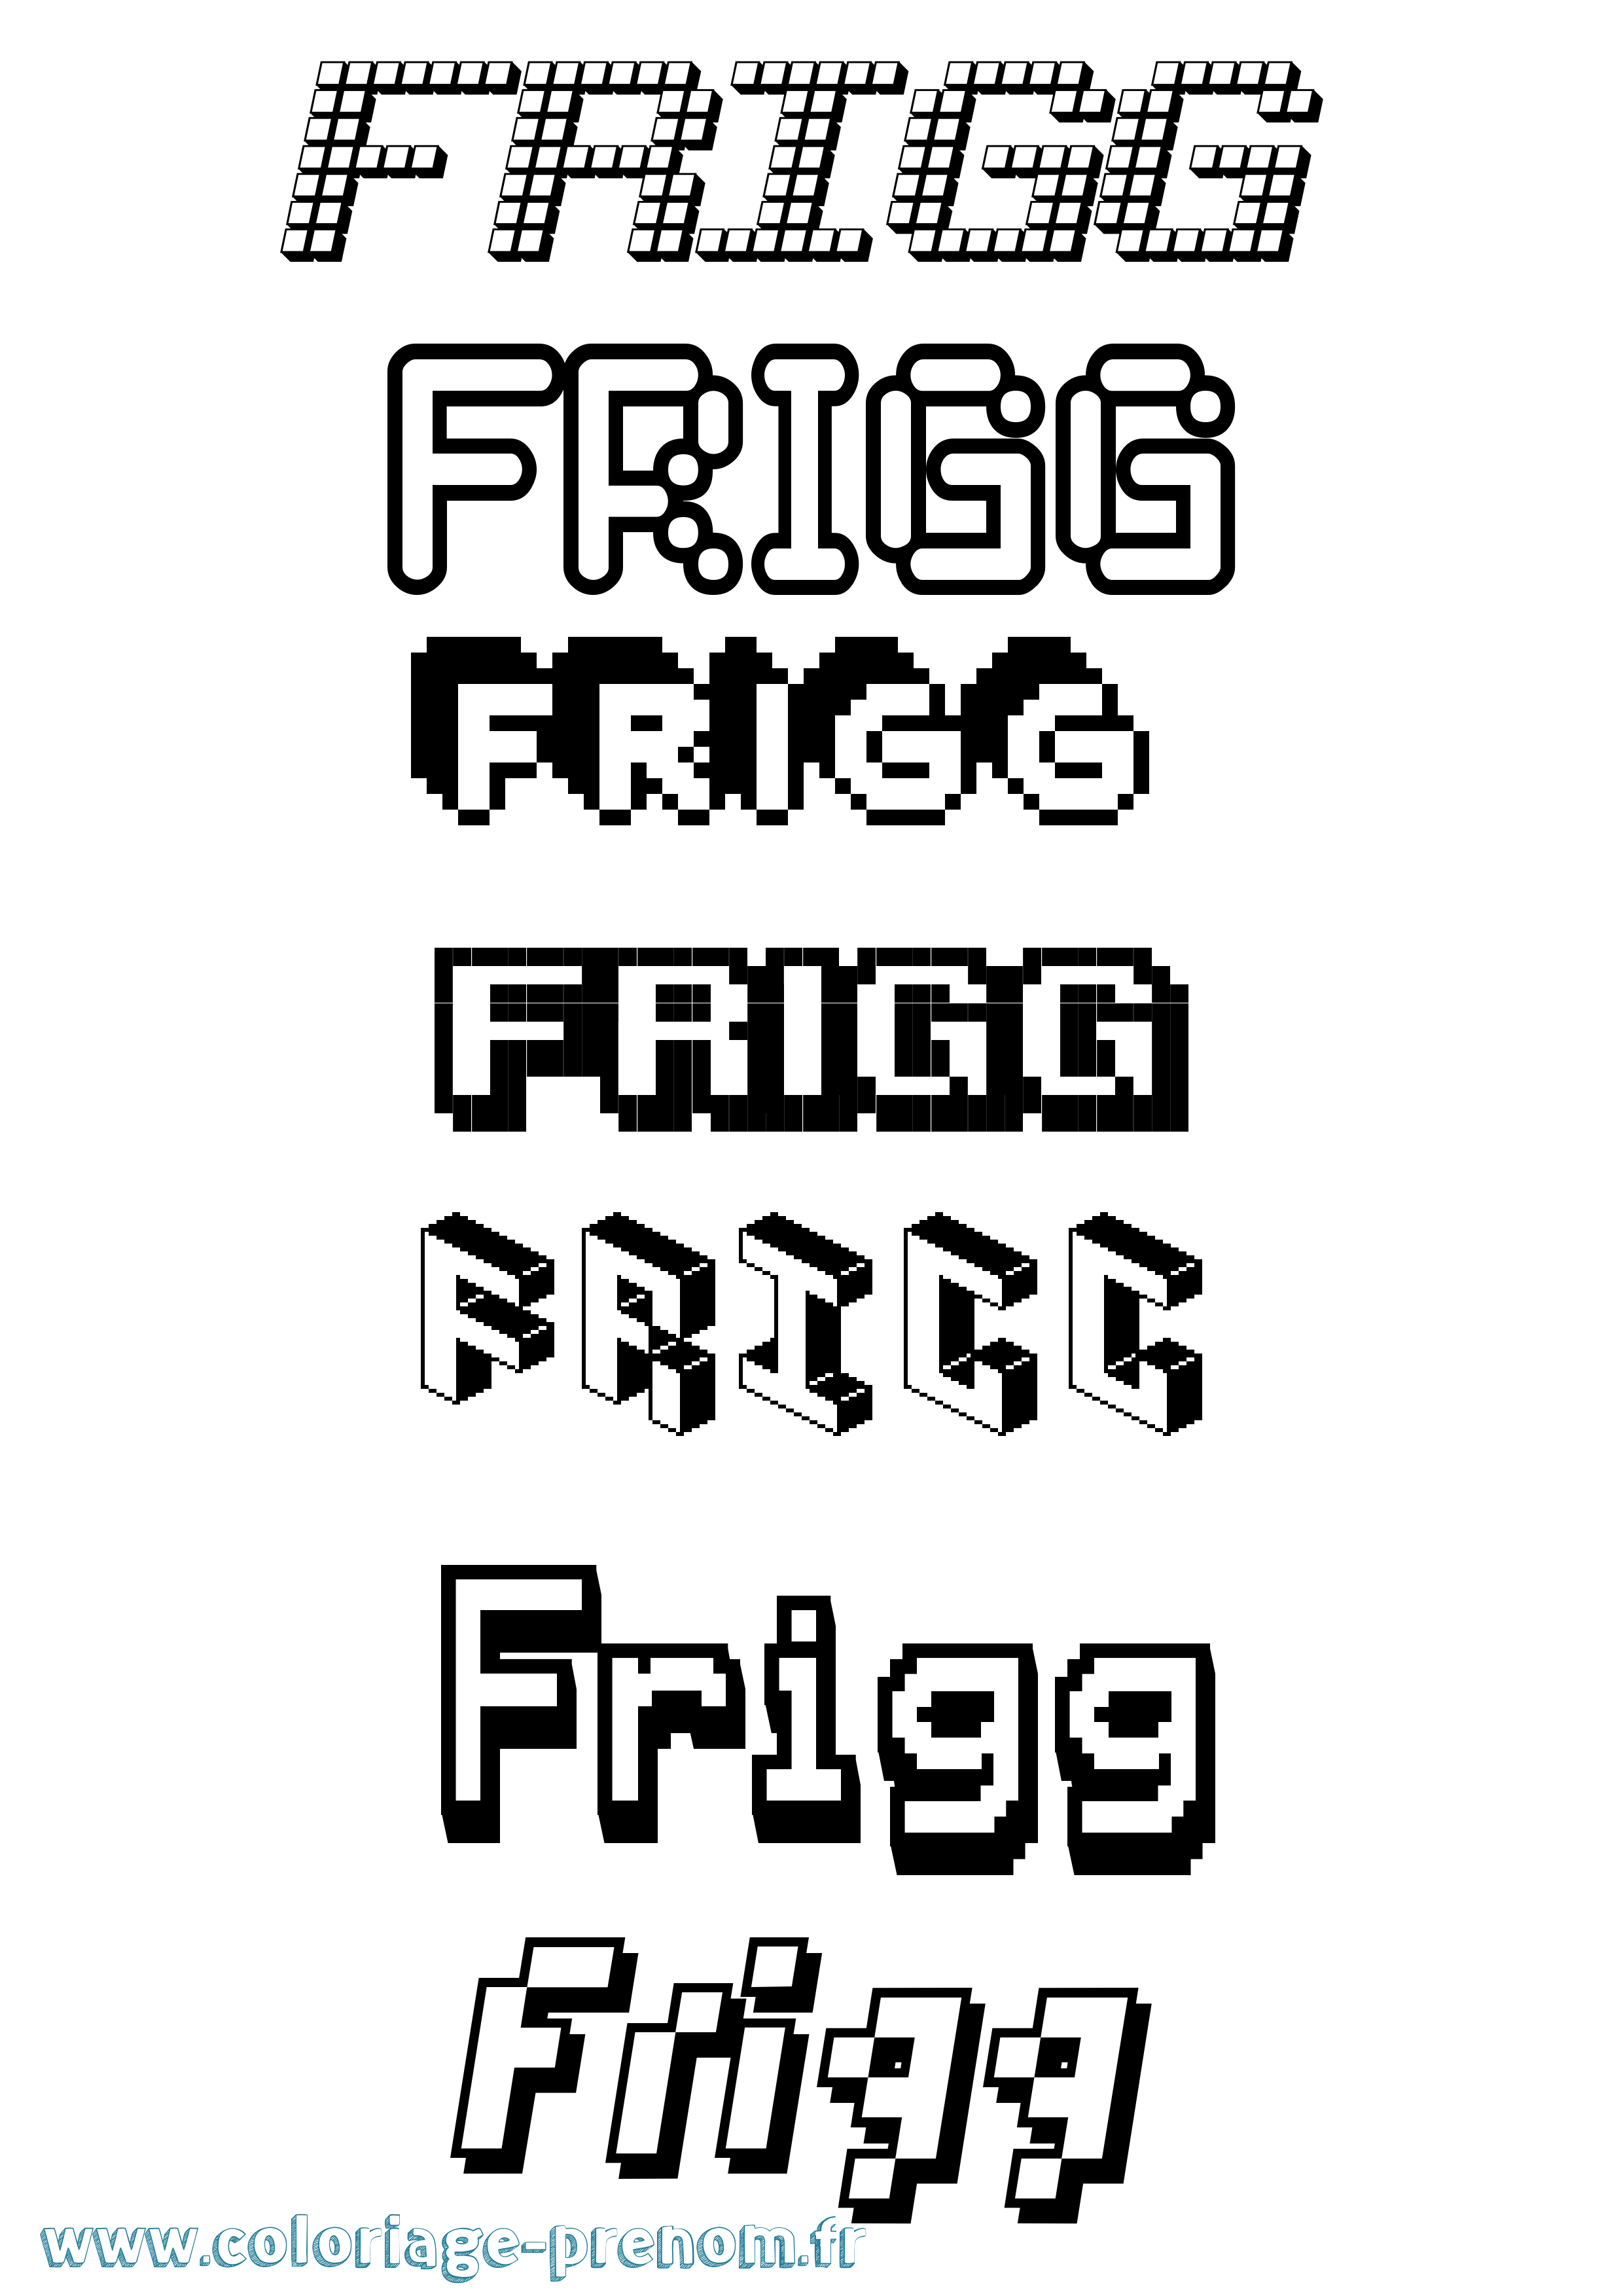 Coloriage prénom Frigg Pixel